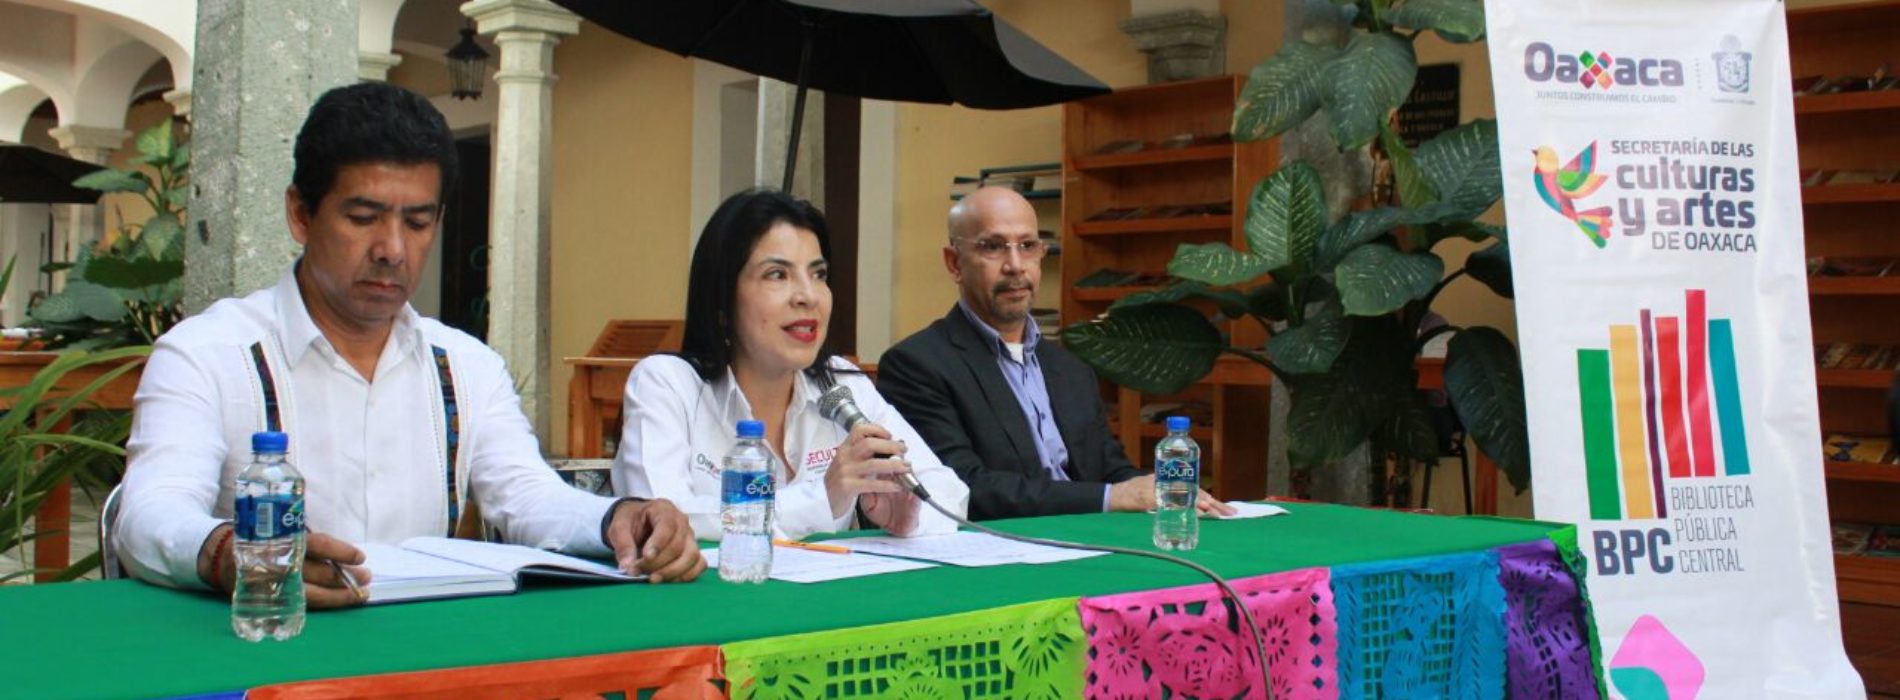 Reactiva Seculta agenda cultural en Oaxaca